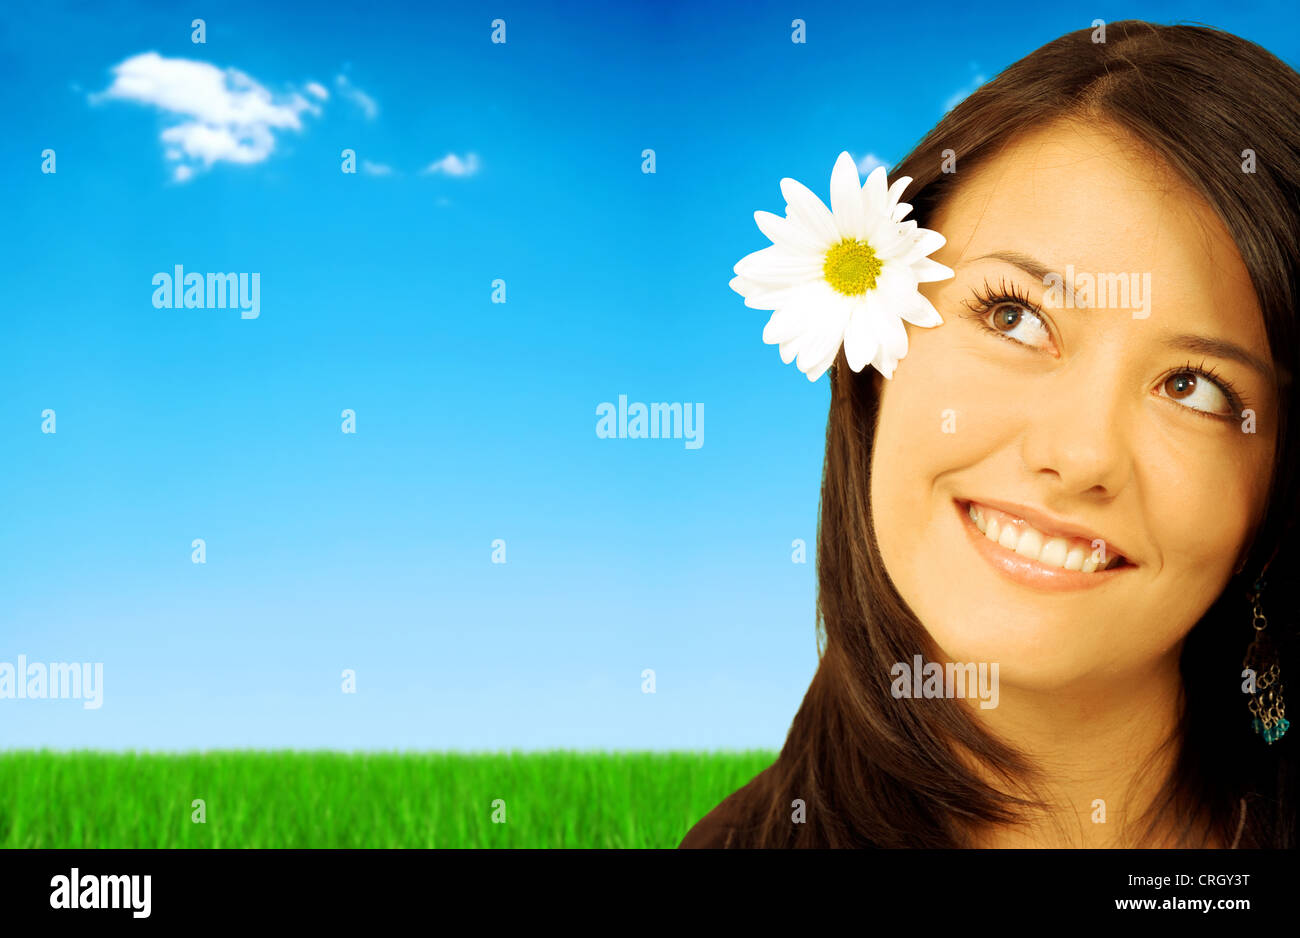 schönen Frühling oder Sommer Mädchen lächelnd im Freien - sie hat eine weiße Daisy Blume auf dem Kopf und hat eine durchdachte und ausdrucksstarke Gesicht Stockfoto